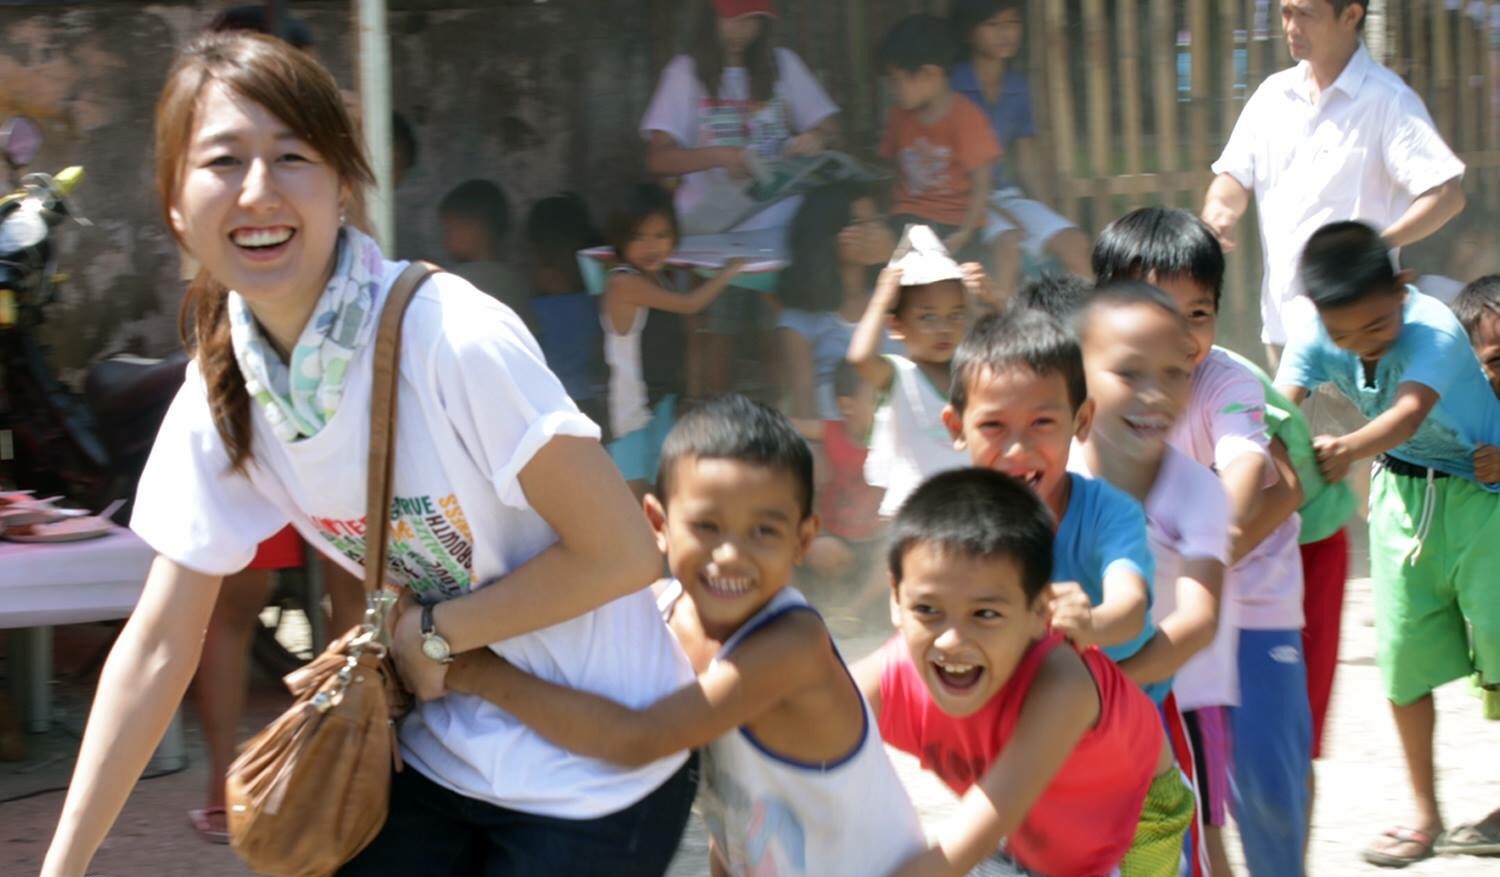 フィリピンの貧困って実際どういう状況なの ボランティアで感じたこと